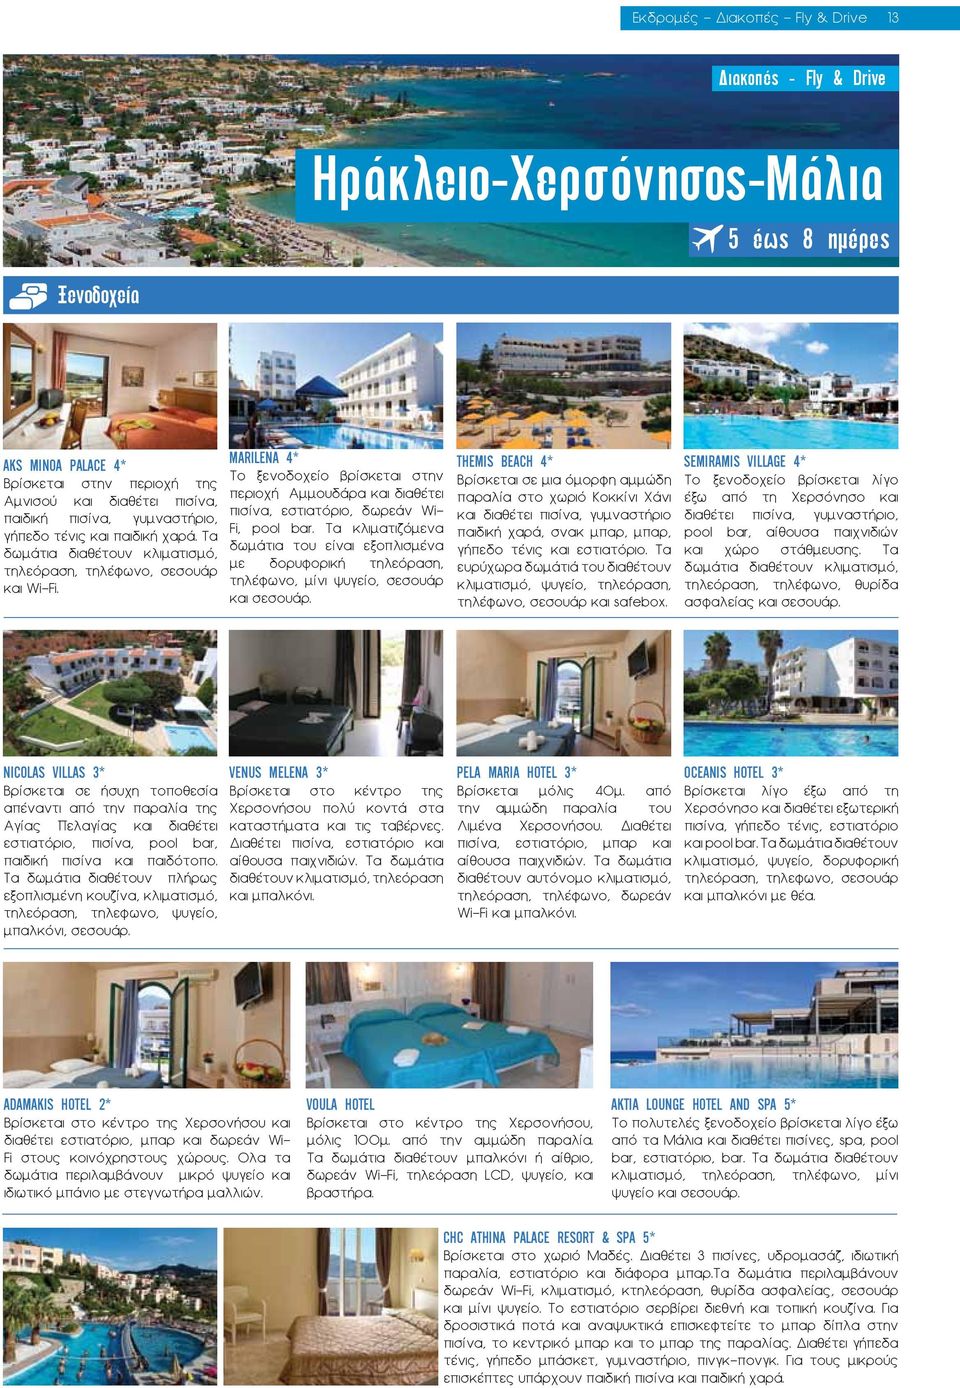 MARILENA 4* Το ξενοδοχείο βρίσκεται στην περιοχή Αμμουδάρα και διαθέτει πισίνα, εστιατόριο, δωρεάν Wi- Fi, pool bar.